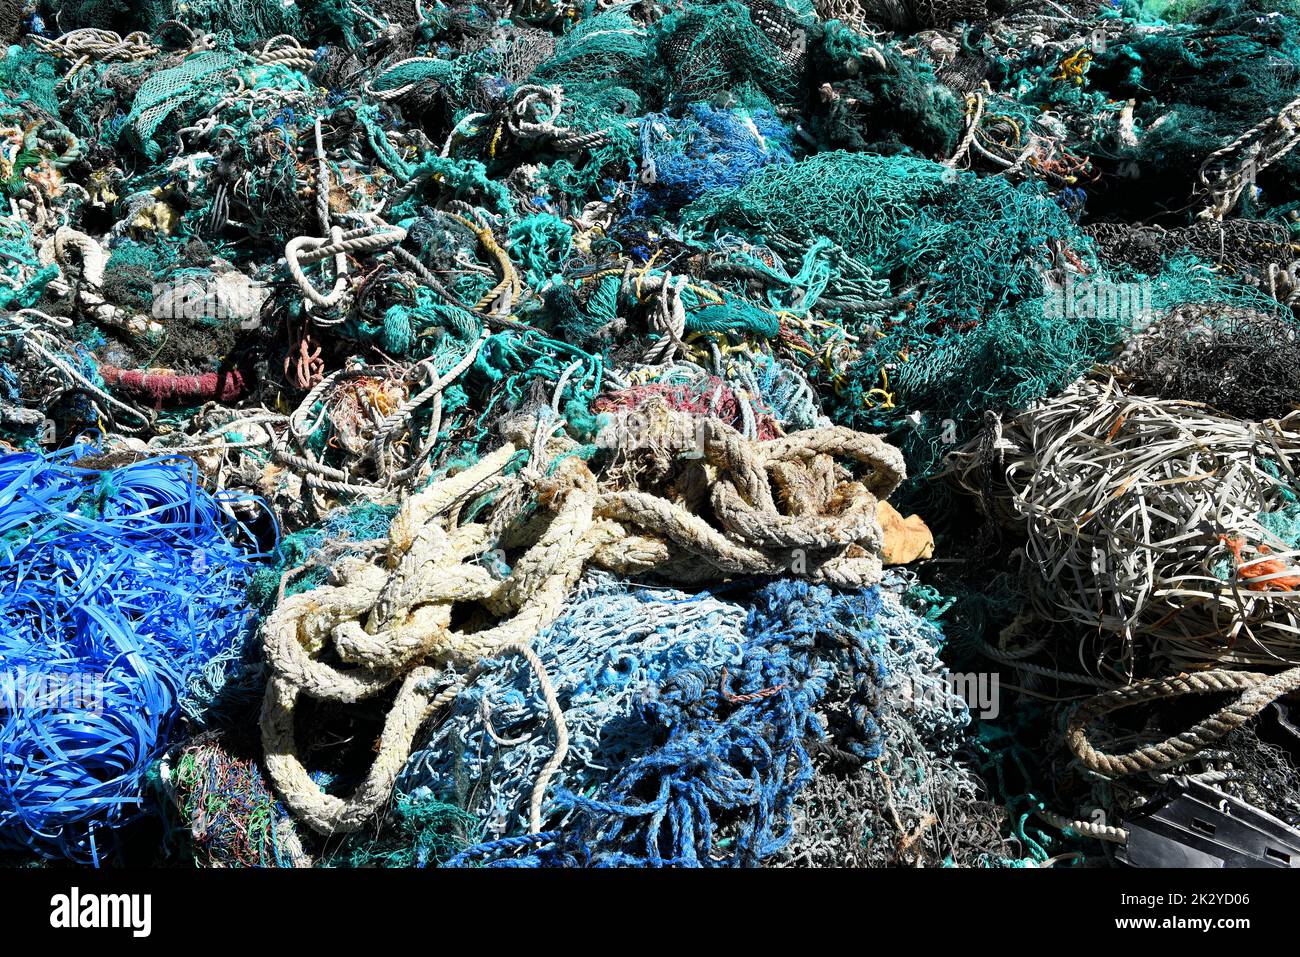 Une grande pile de filets de pêche, de cordes et de débris de chalutier a dragué du port de Los Angeles. Les filets de pêche sont une source majeure de pollution des océans. Banque D'Images